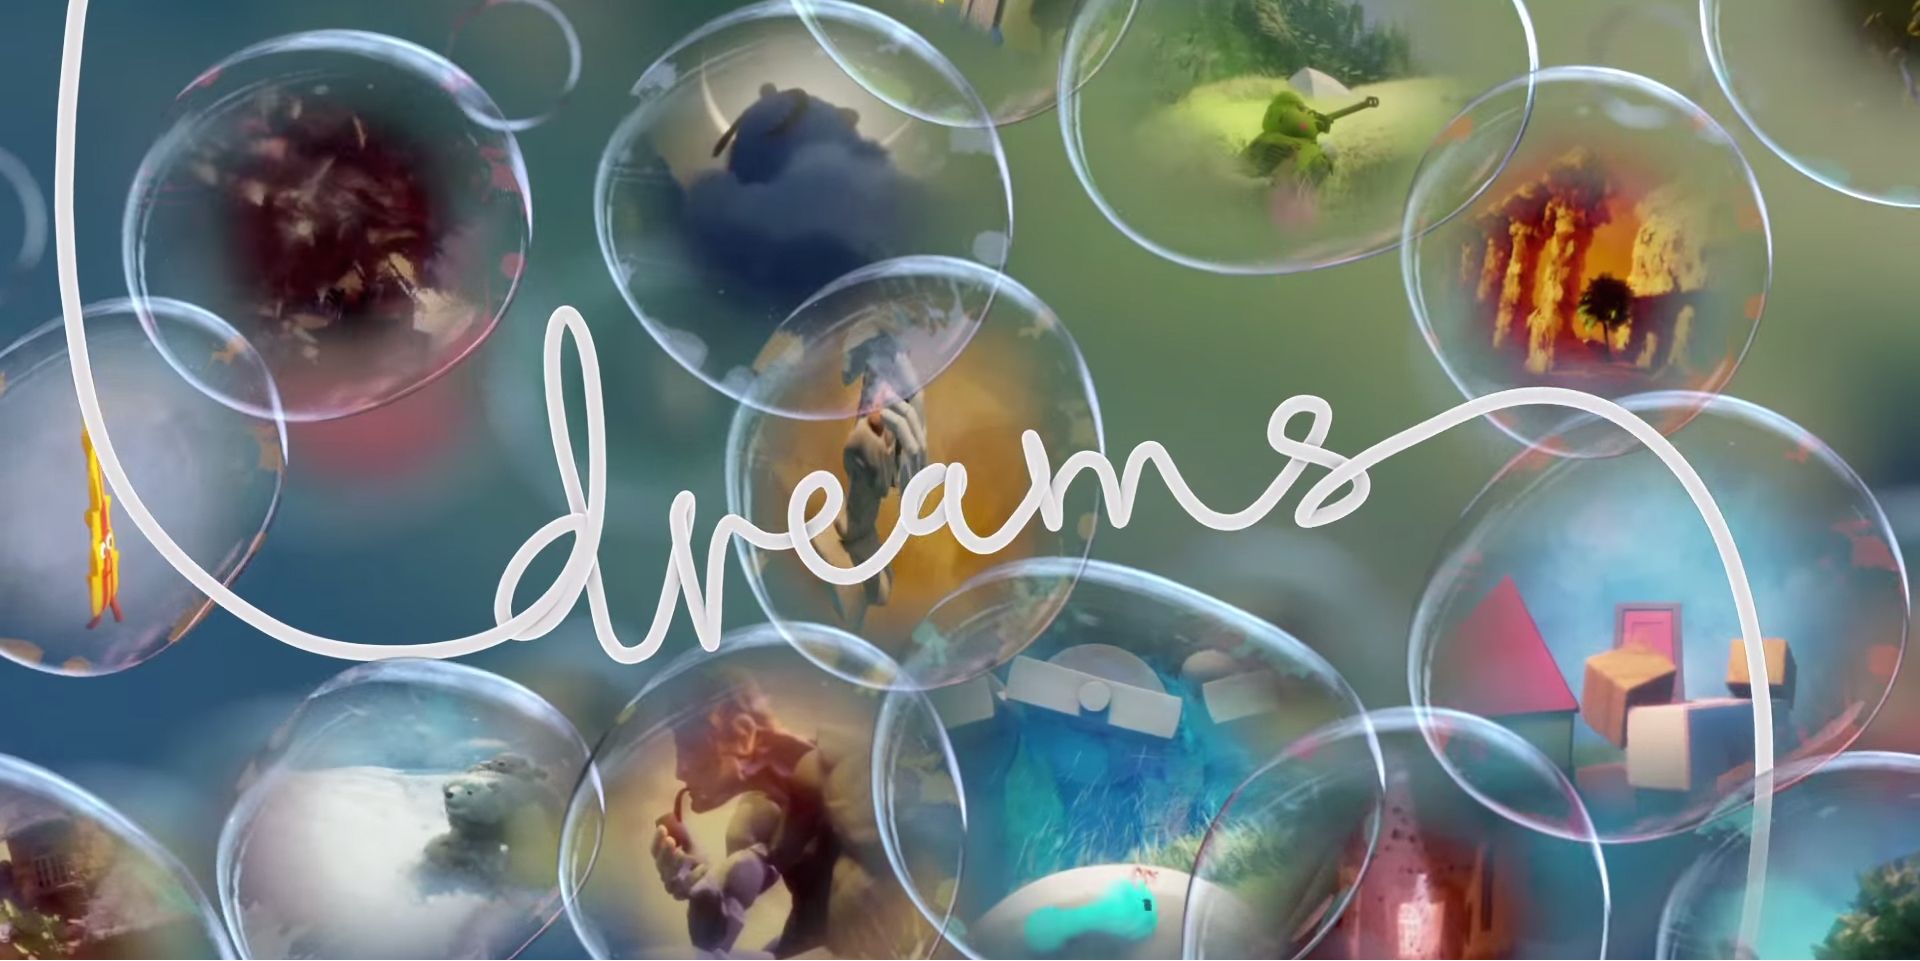 Dreams para PS4 Media Molecule